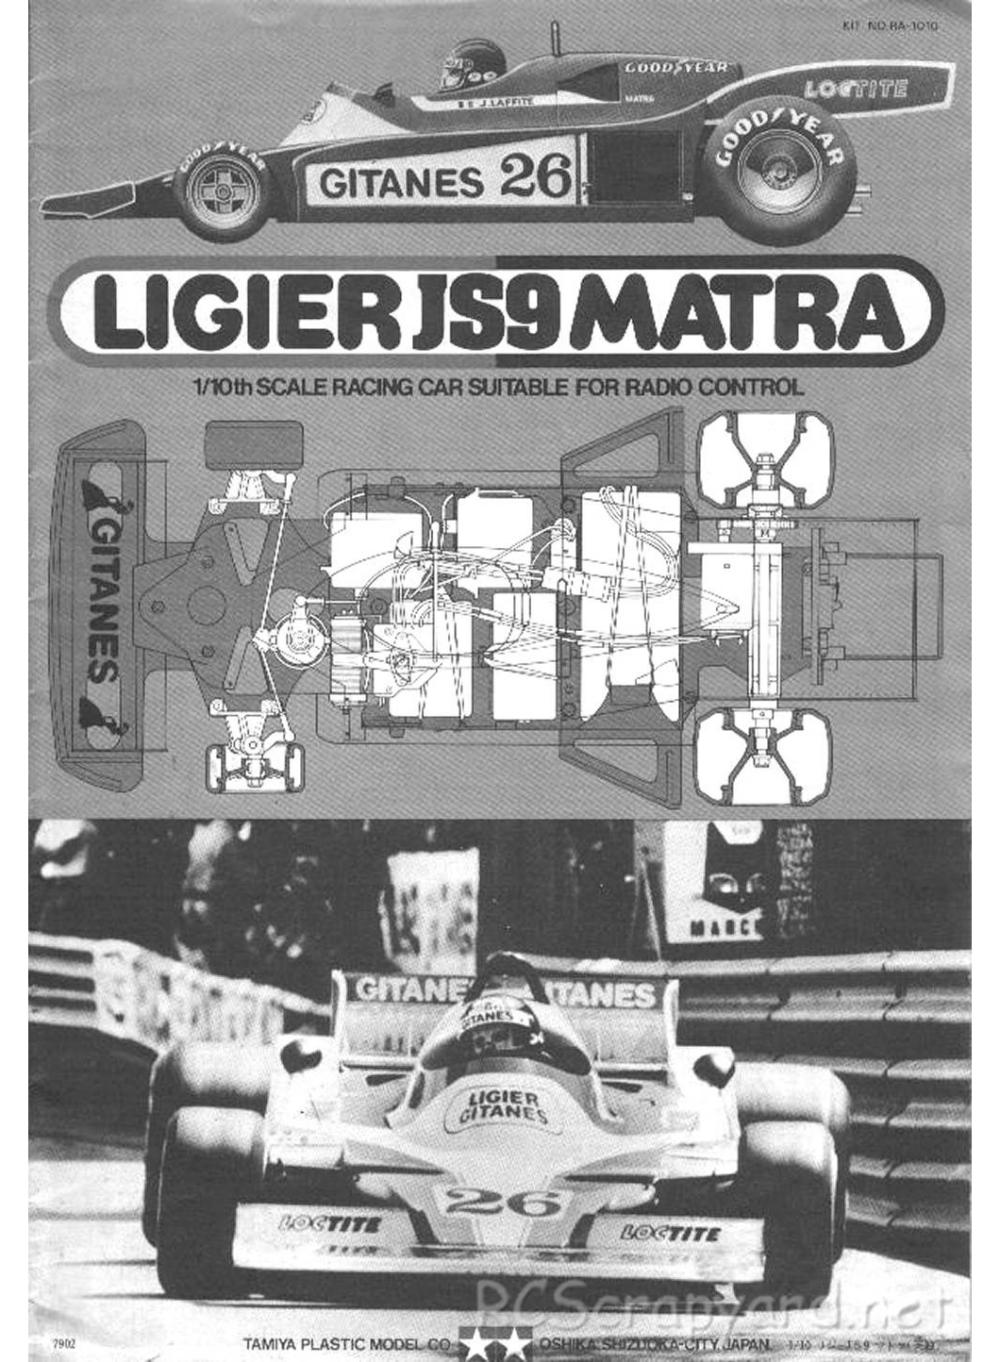 Tamiya - Ligier JS9 Matra - 58010 - Manual